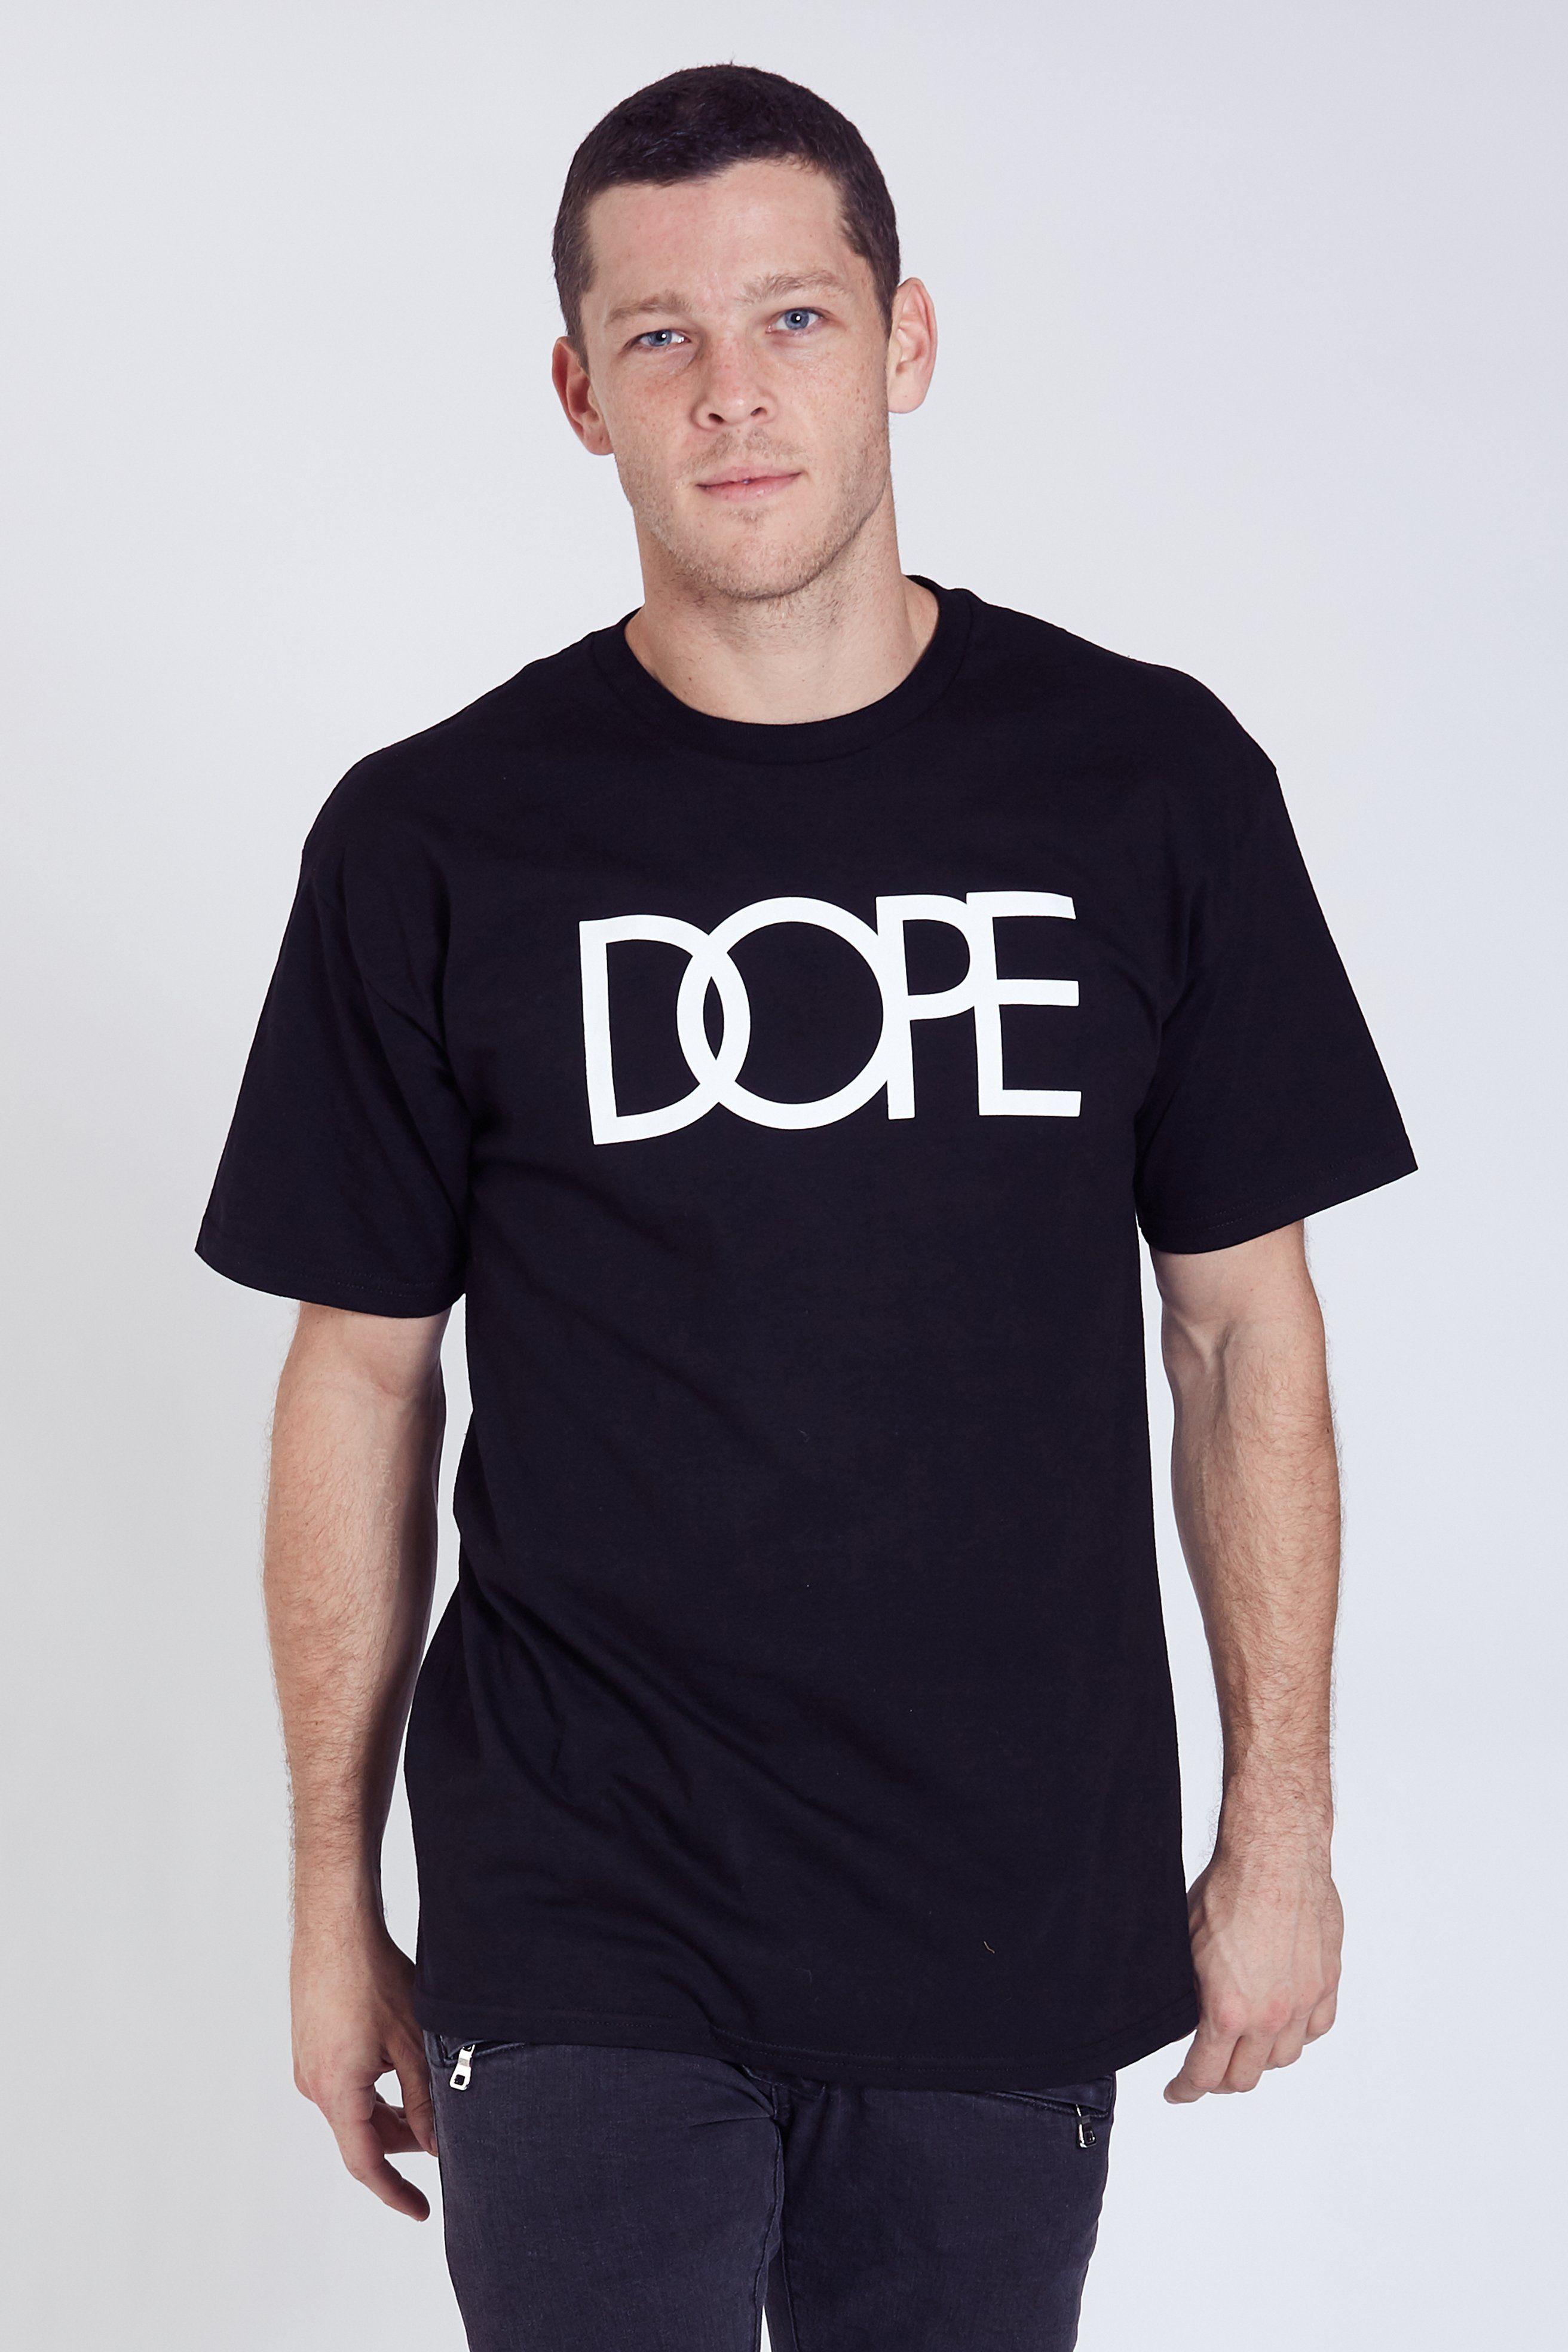 Dope Clothing Logo - DOPE Logo Tee